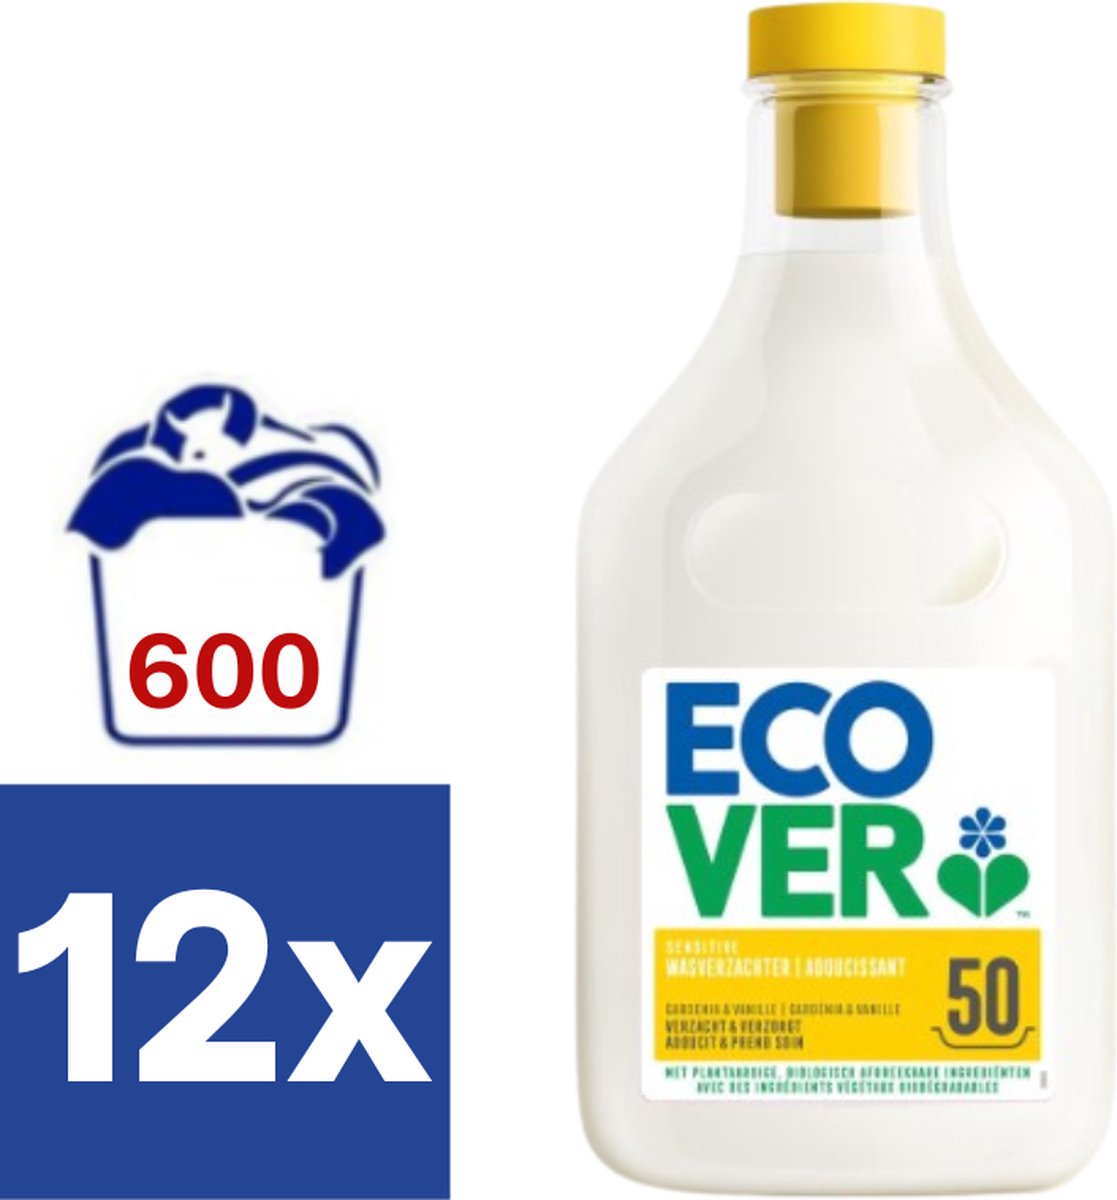 Ecover Gardenia & Vanille Wasverzachter (Voordeelverpakking) - 12 x 1.5 l (600 wasbeurten)